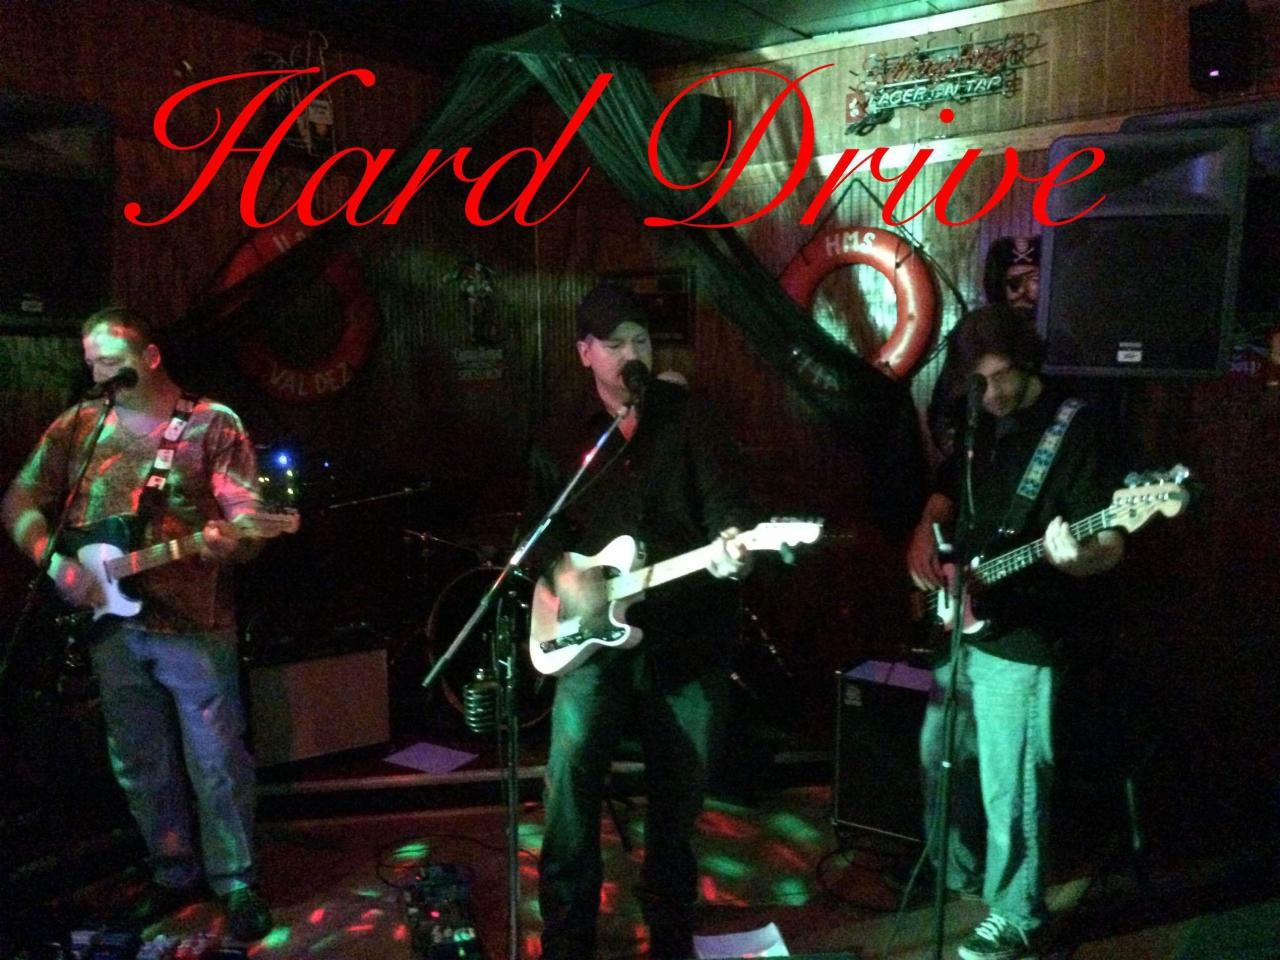 Hard drive the band